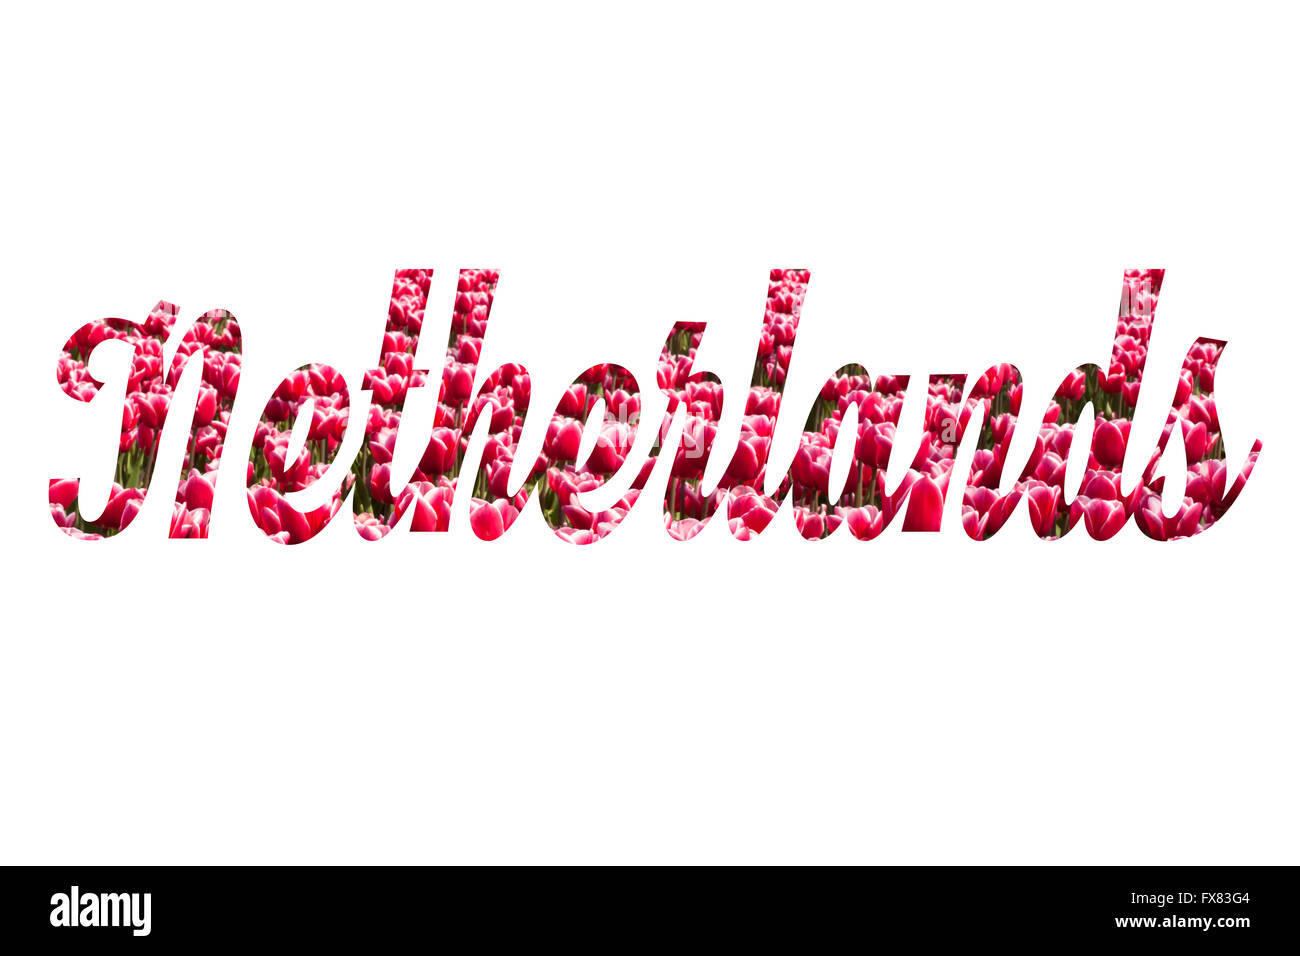 Nom du pays Pays-bas écrit à partir de jacinthes roses Banque D'Images